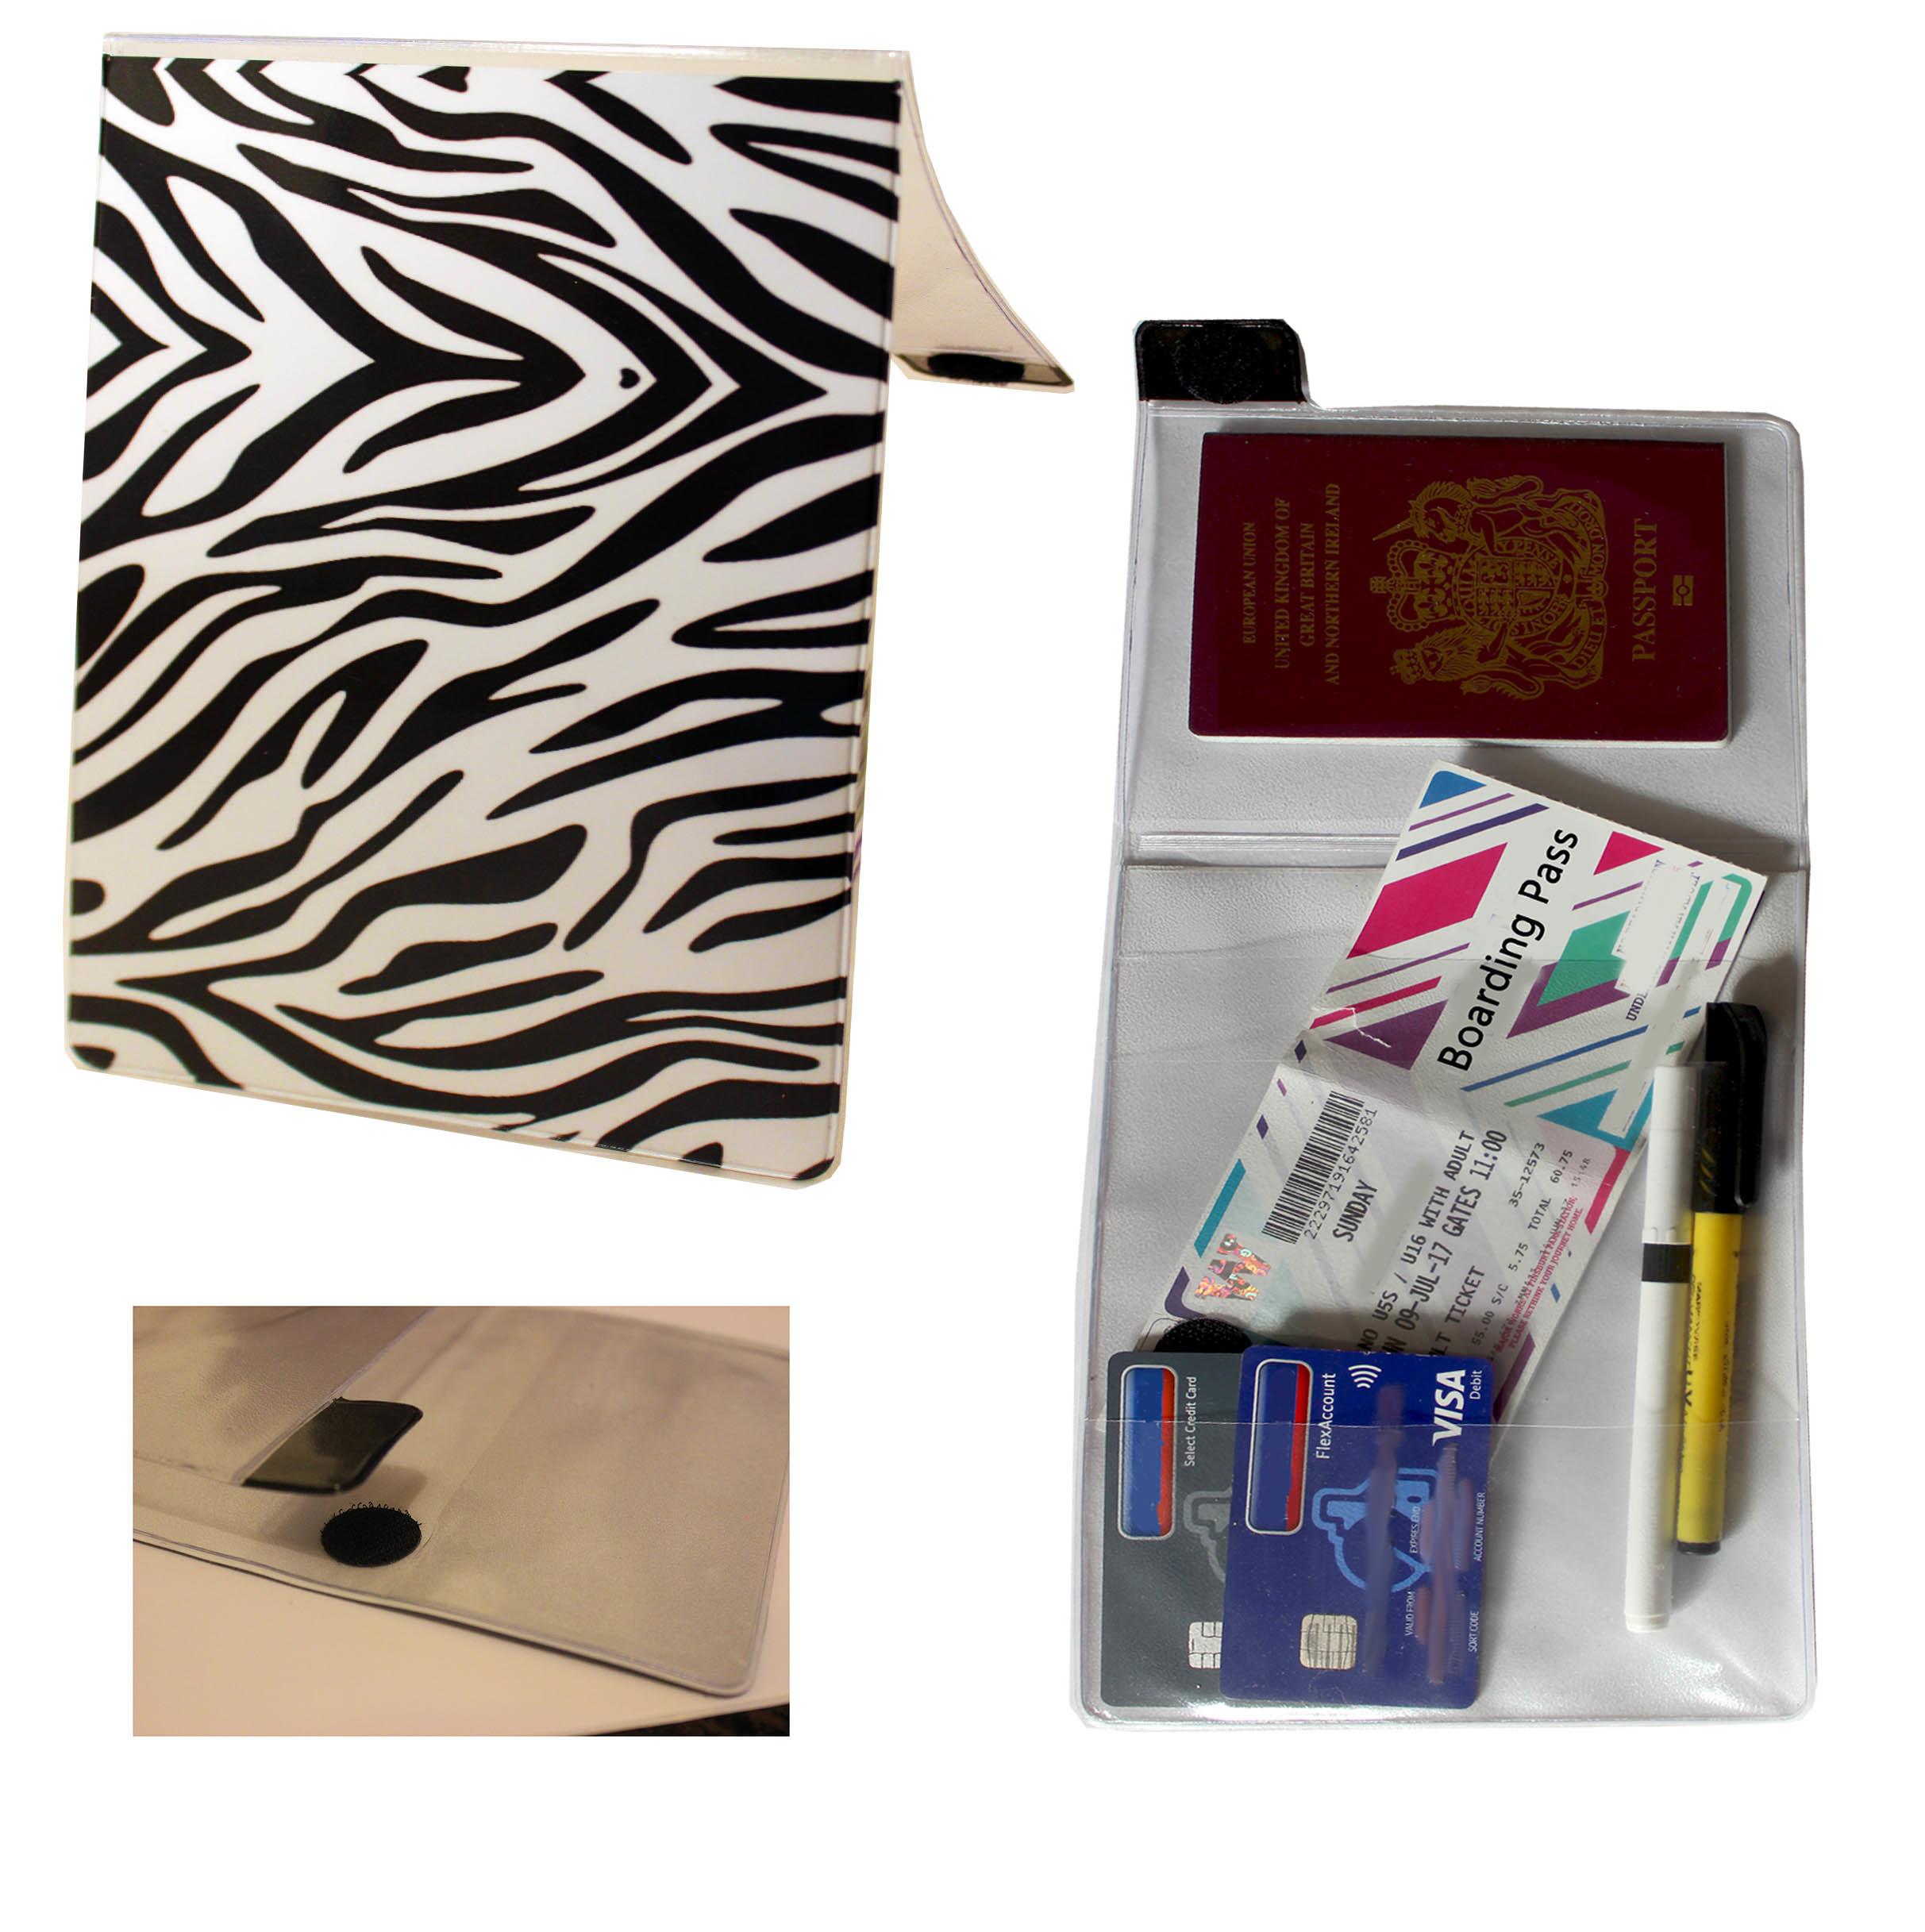 Zebra Travel Document Holder